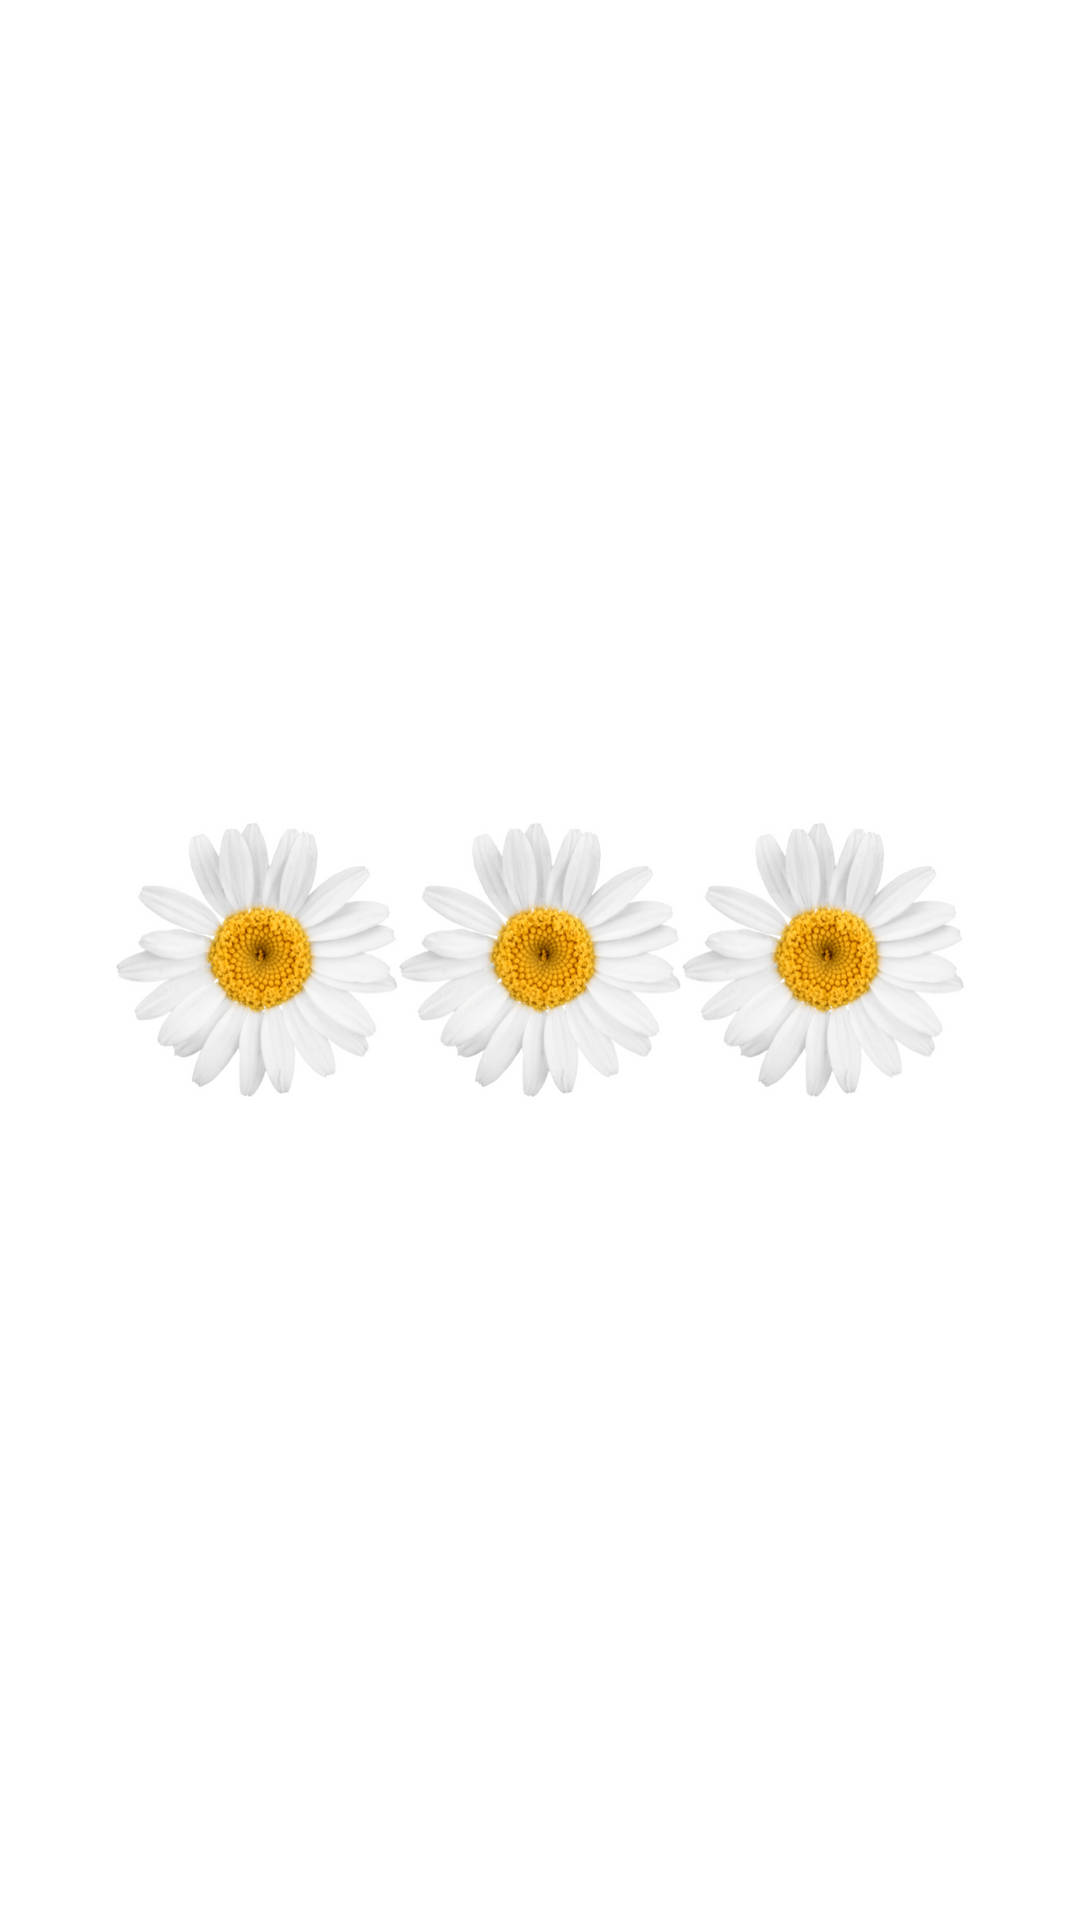 Hvide blomst spænder til iPhone. Wallpaper